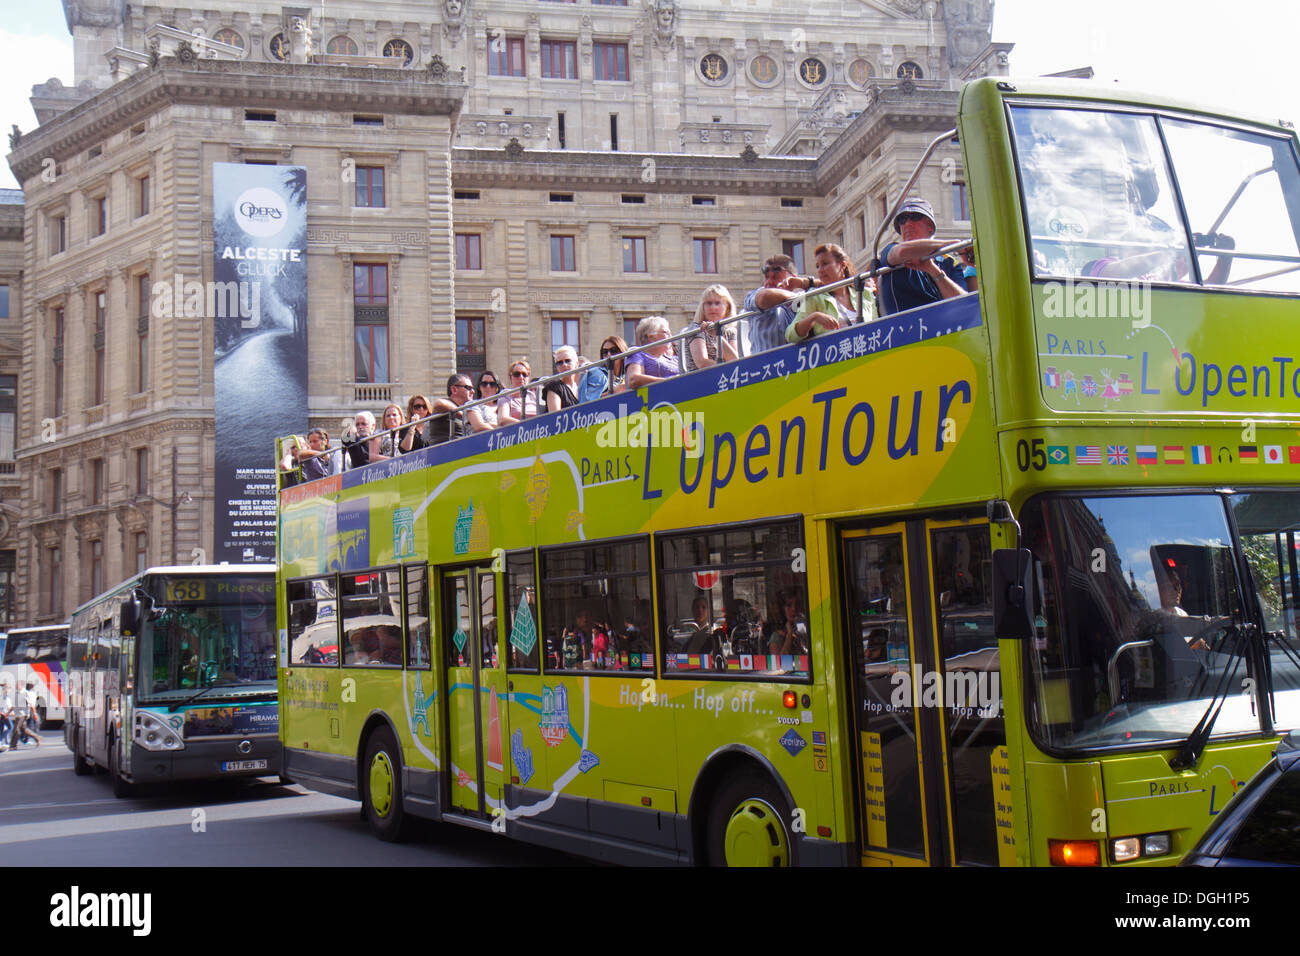 Paris France,9th arrondissement,Rue Scribe,Palais Garnier,Opera National de Paris,tour bus,coach,double decker,L OpenTour,France130814091 Stock Photo